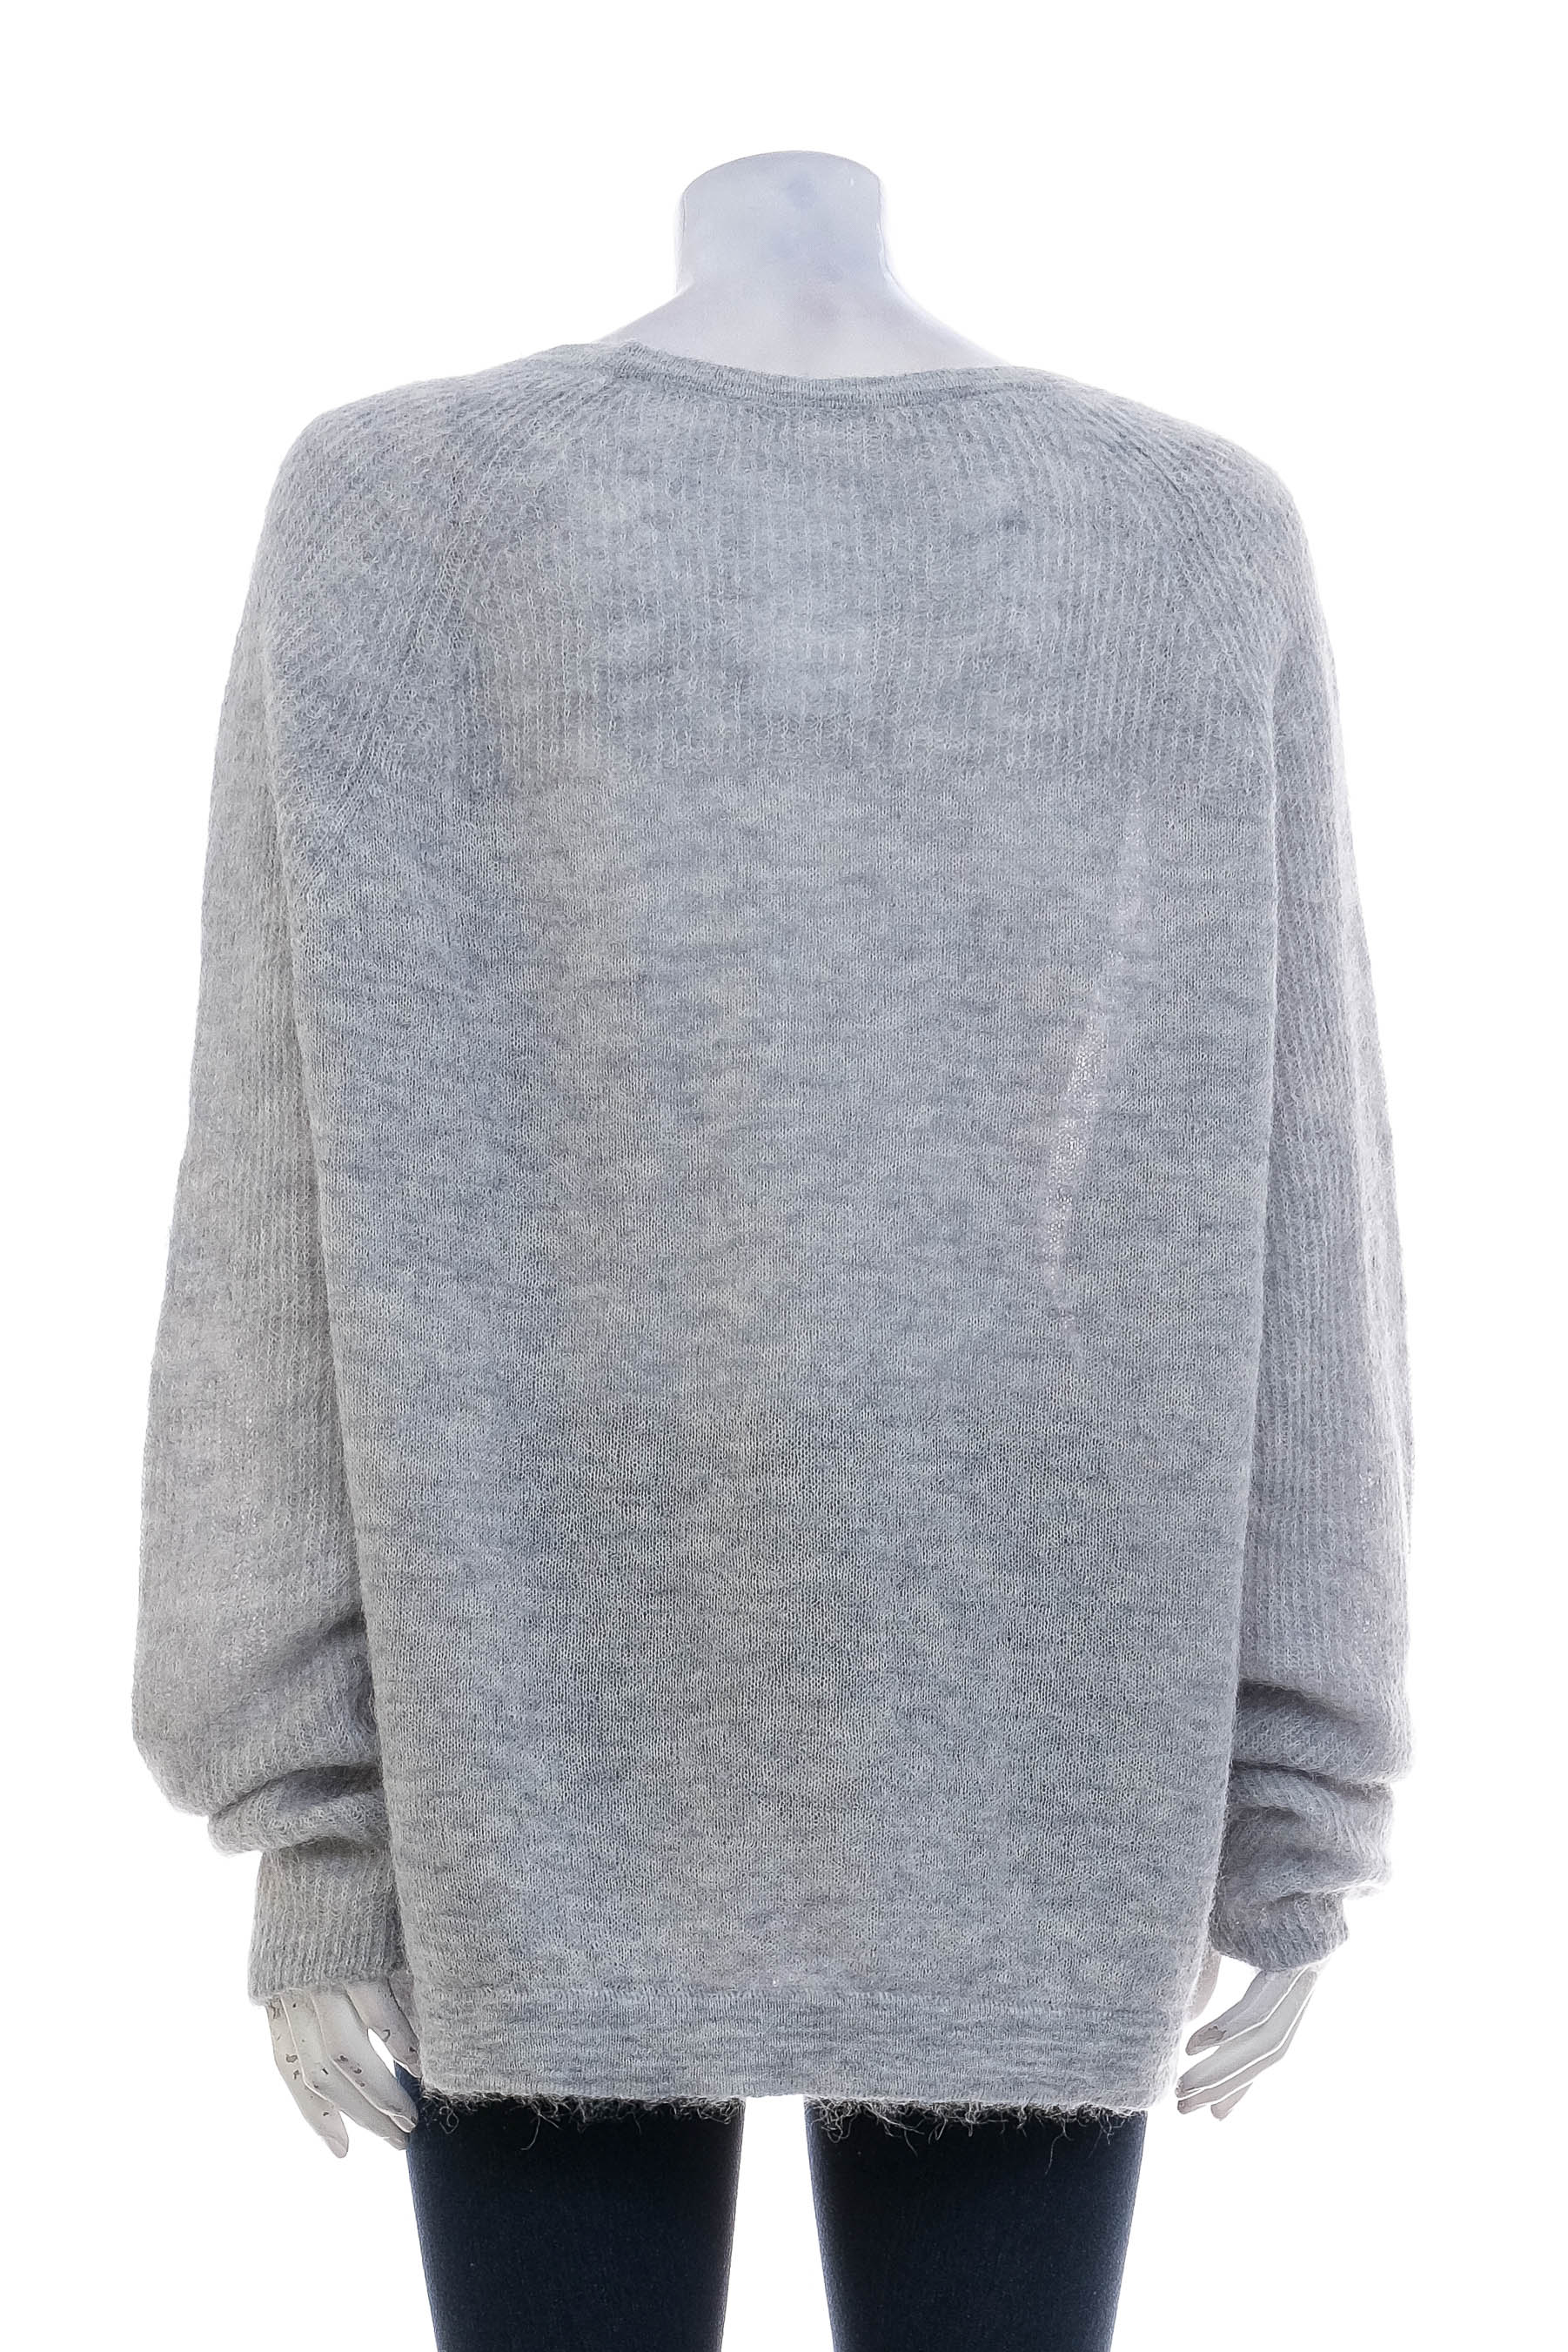 Women's sweater - OPUS - 1